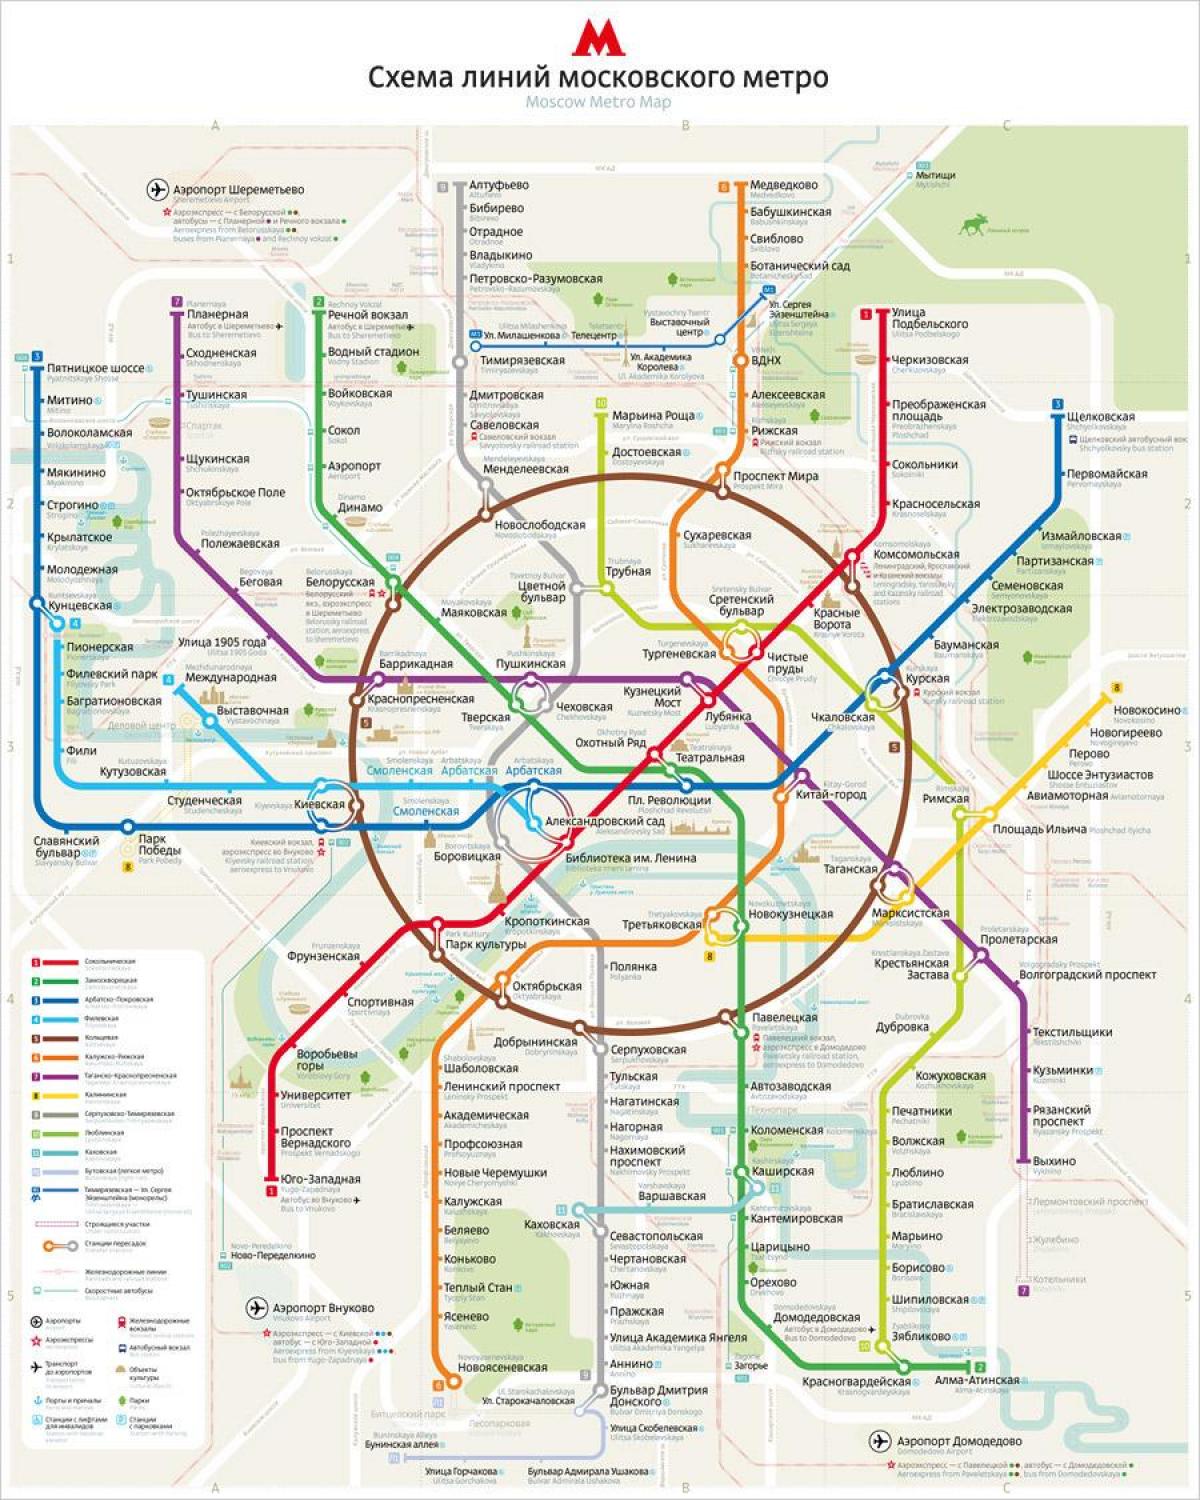 bản đồ của Moscow metro anh và nga